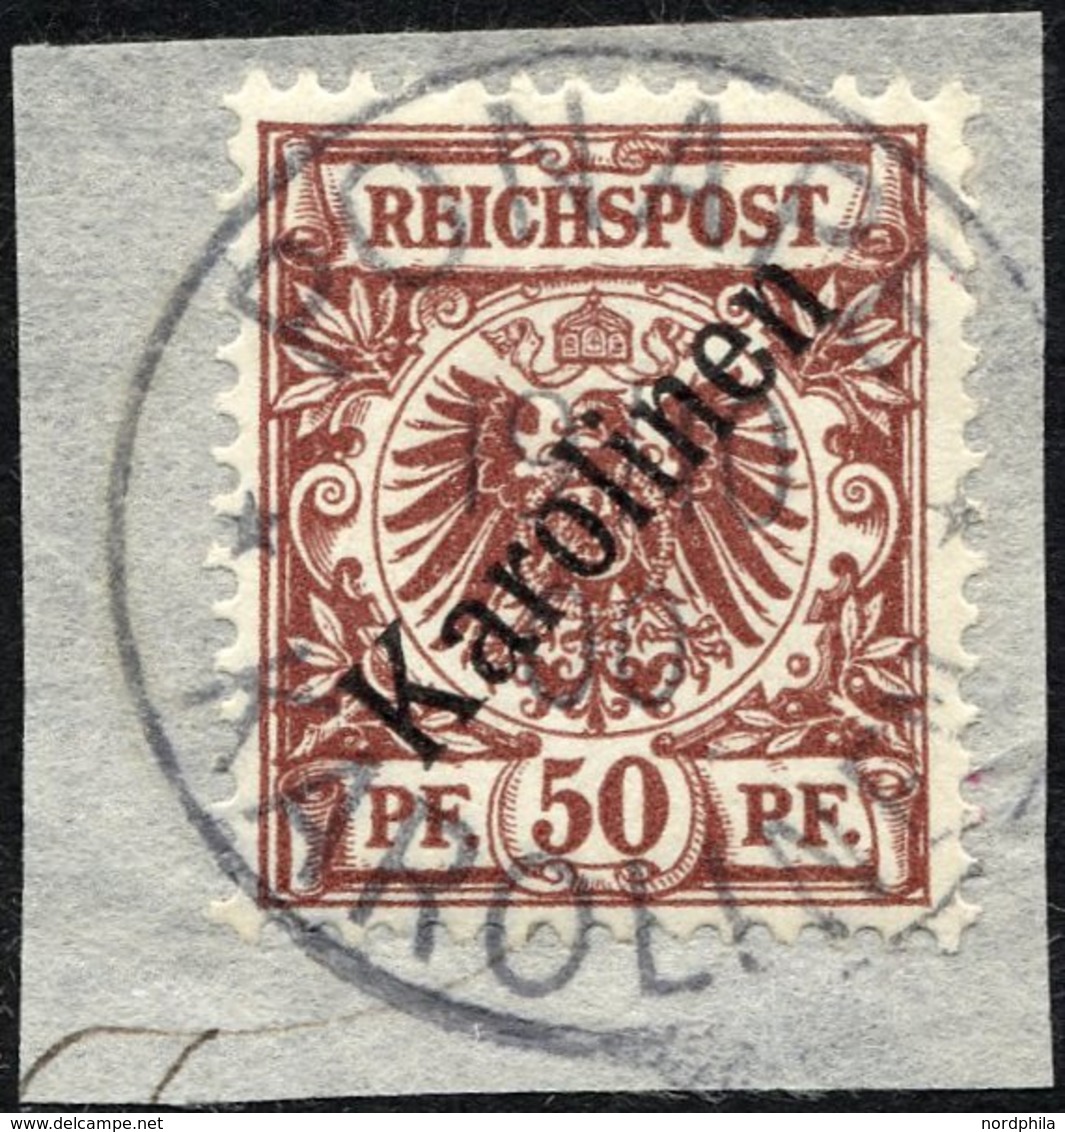 KAROLINEN 6I BrfStk, 1899, 50 Pf. Diagonaler Aufdruck, Stempel PONAPE, Prachtbriefstück, Fotoattest Steuer Mi. (1800.-) - Karolinen